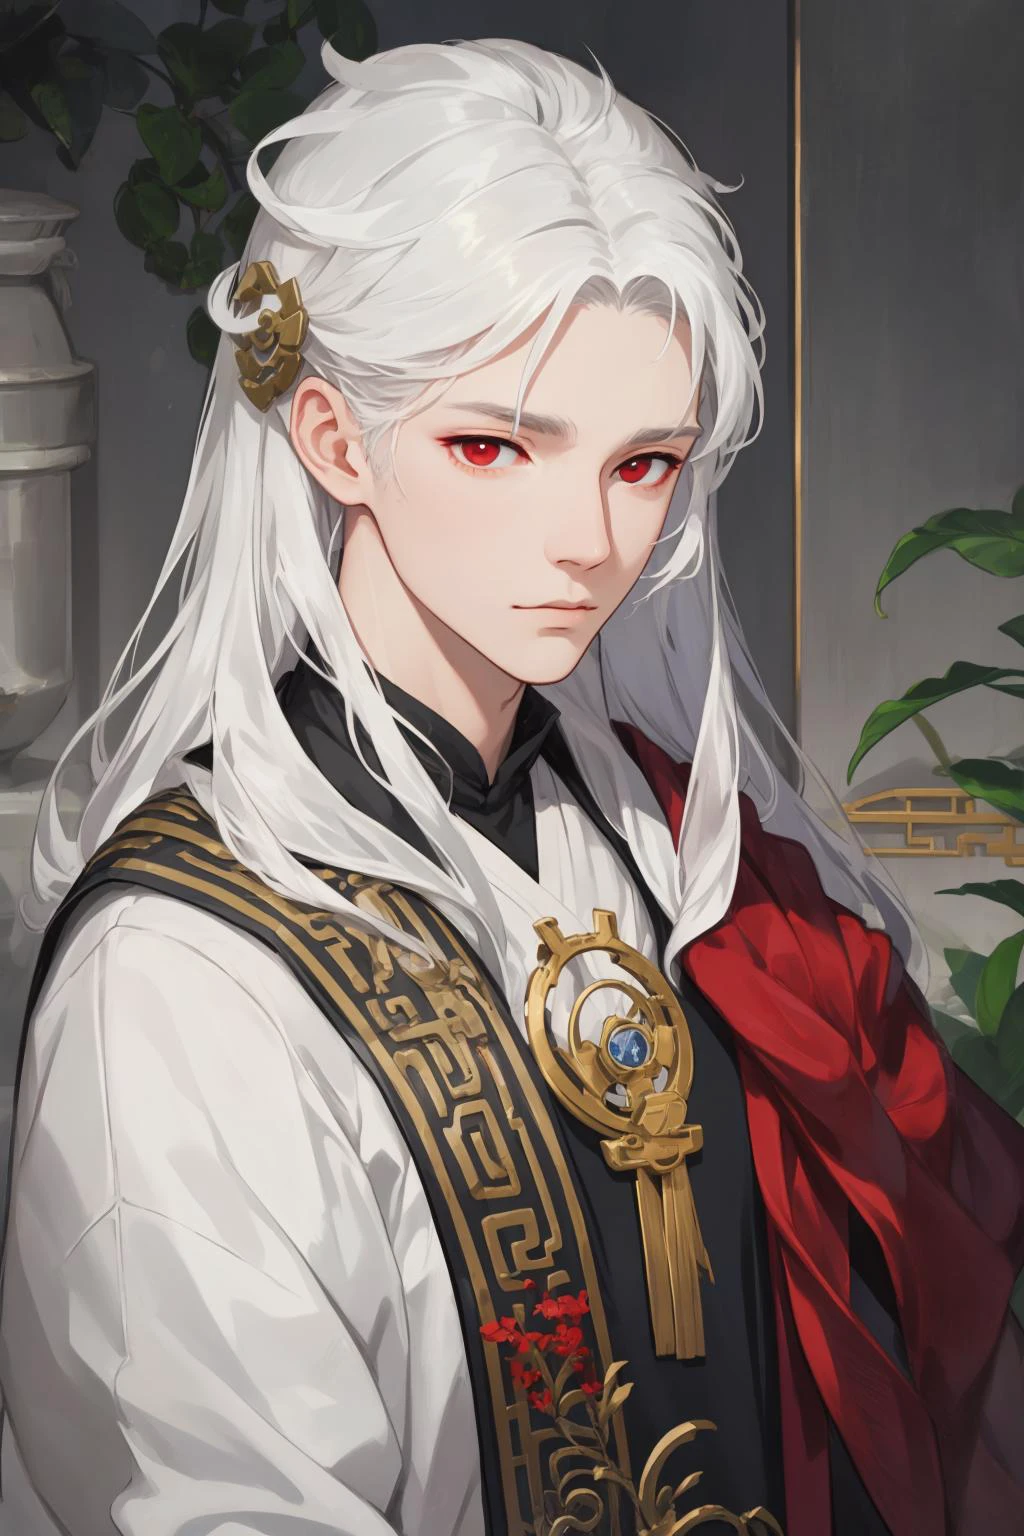 NSFW, 걸작, 최고의 품질, 매우 상세한, 반현실적인, 상세한 얼굴 특징, 1남, 흰머리, 긴 머리, 빨간 눈, Xianxia 고대 옷을 입고